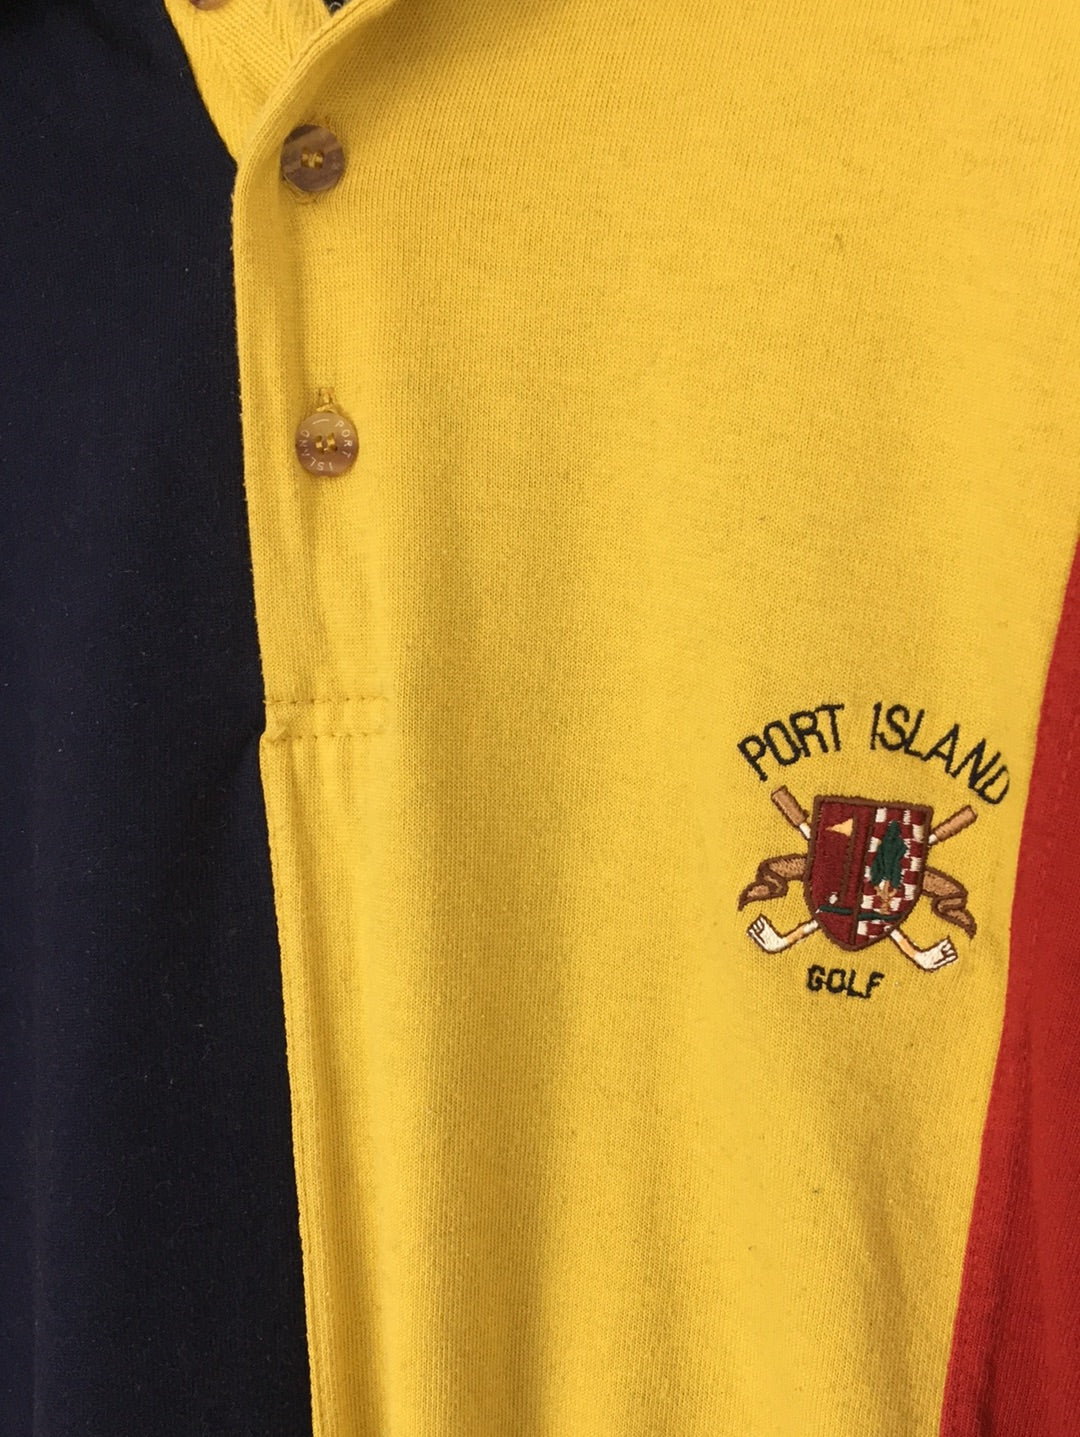 Port Island Golf Sweater (L)